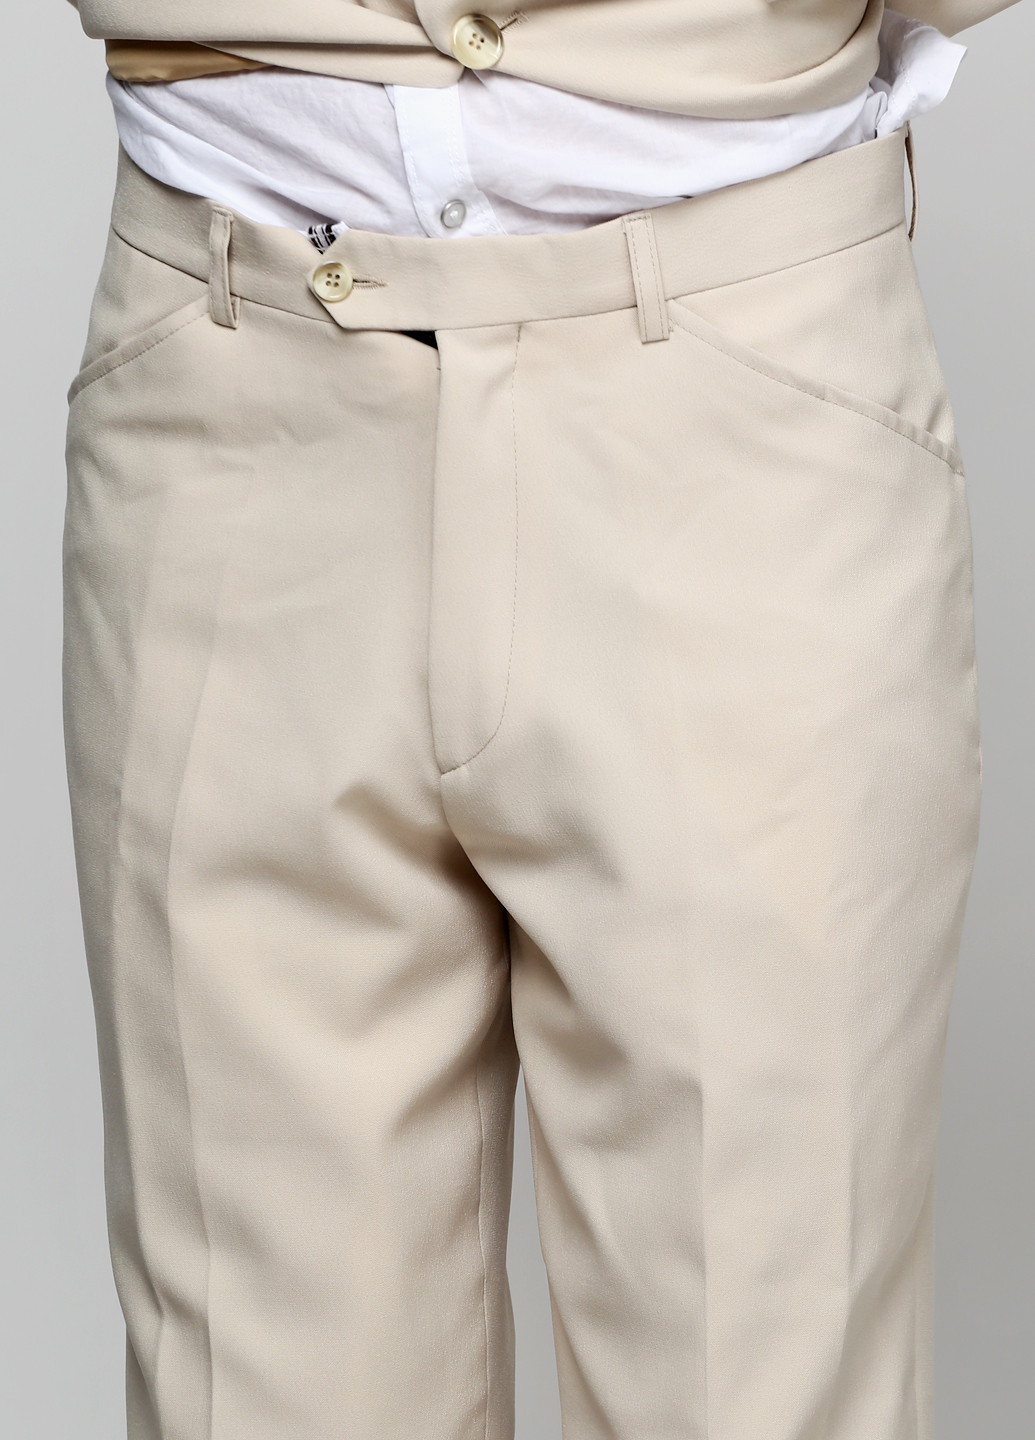 Песочный демисезонный костюм (пиджак, брюки) брючный Bocodo